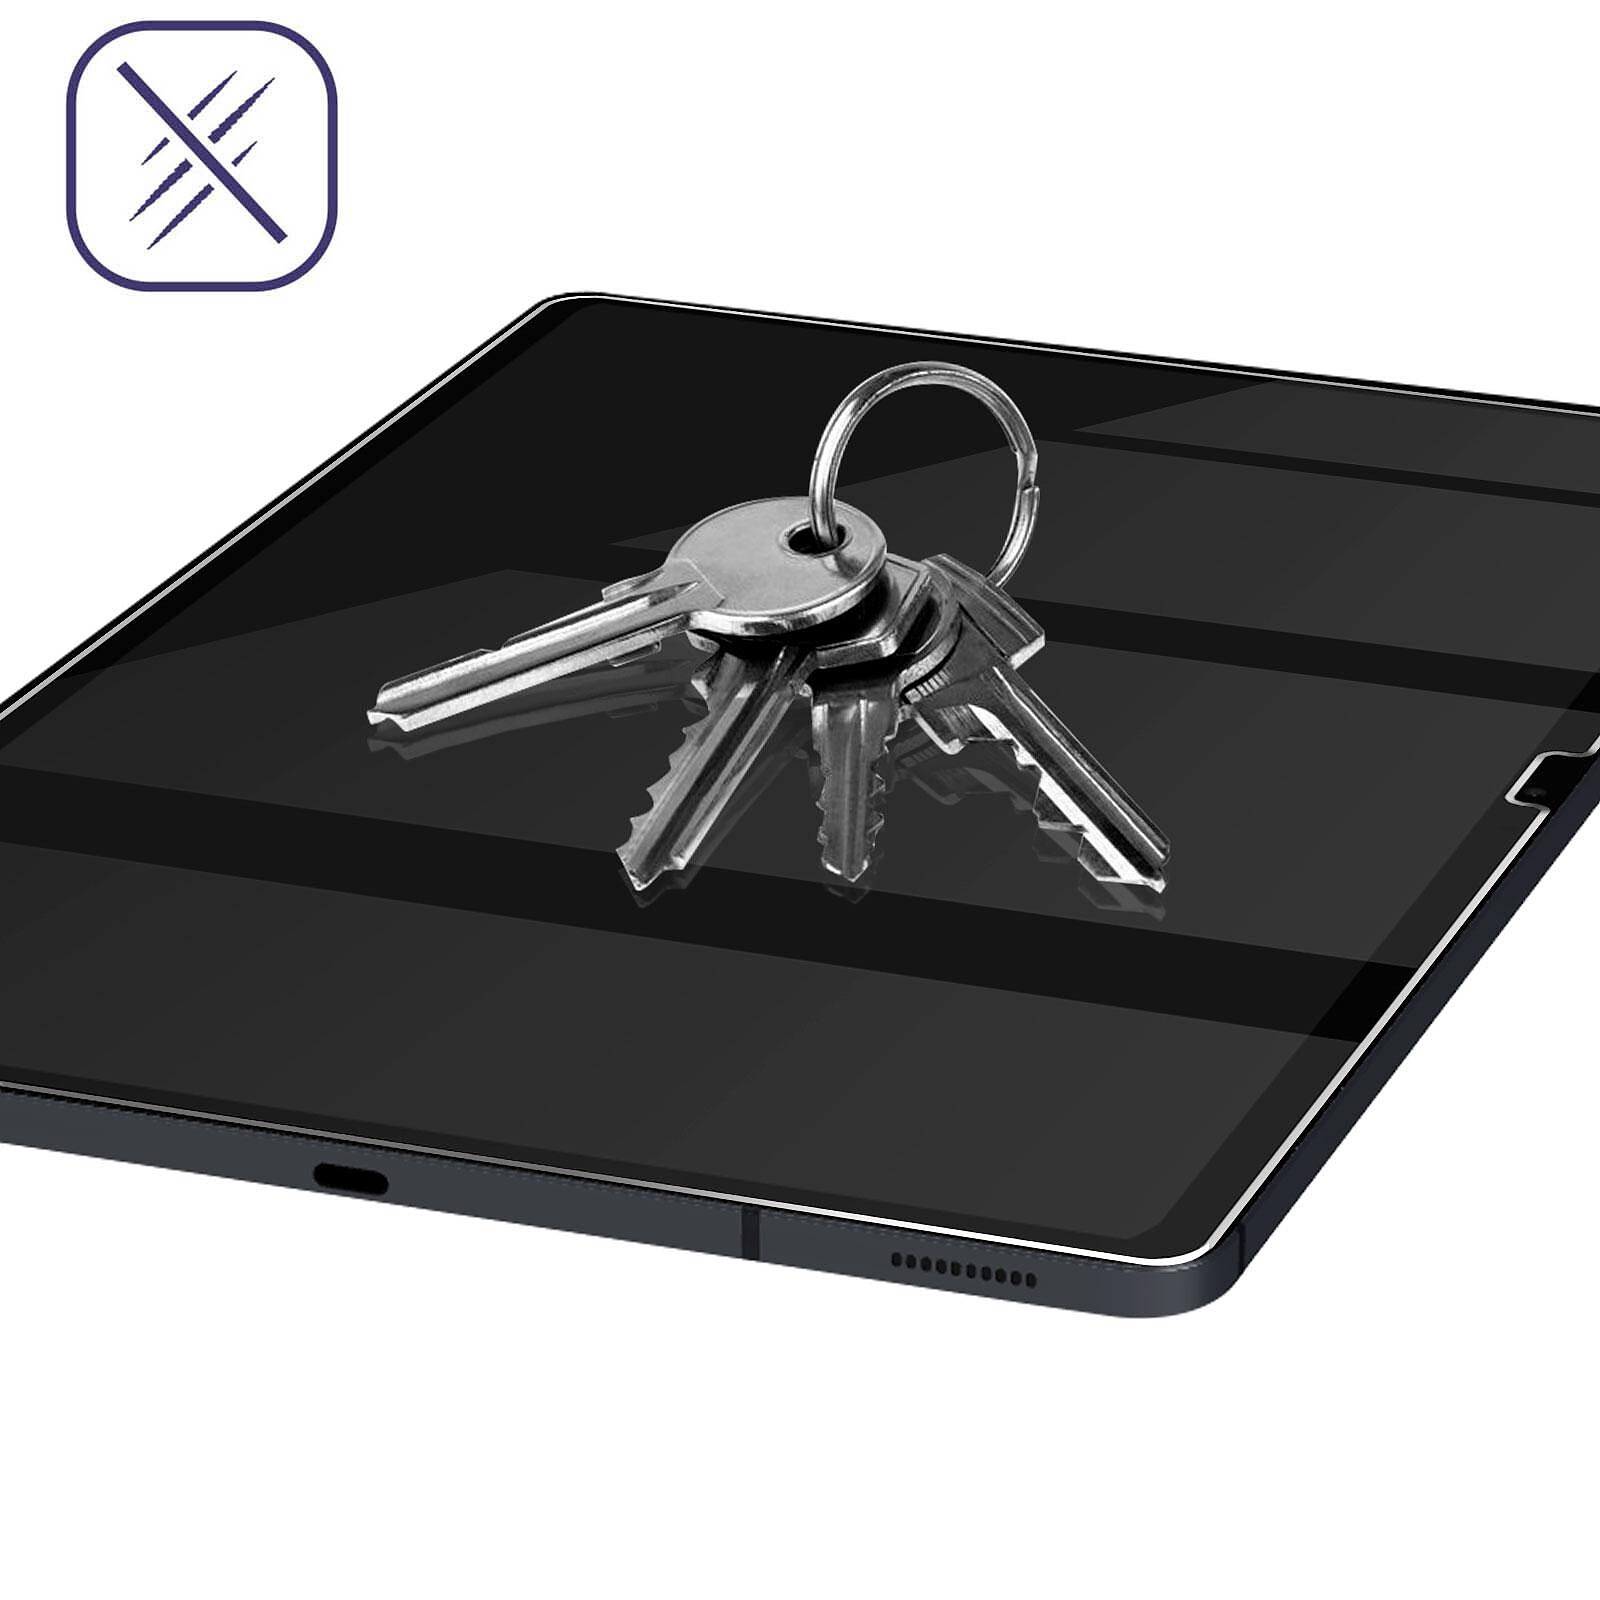 Avizar Film Écran pour iPad 2021 2020 et 2019 10.2 Latex Flexible  Anti-reflet Transparent - Film protecteur tablette - LDLC